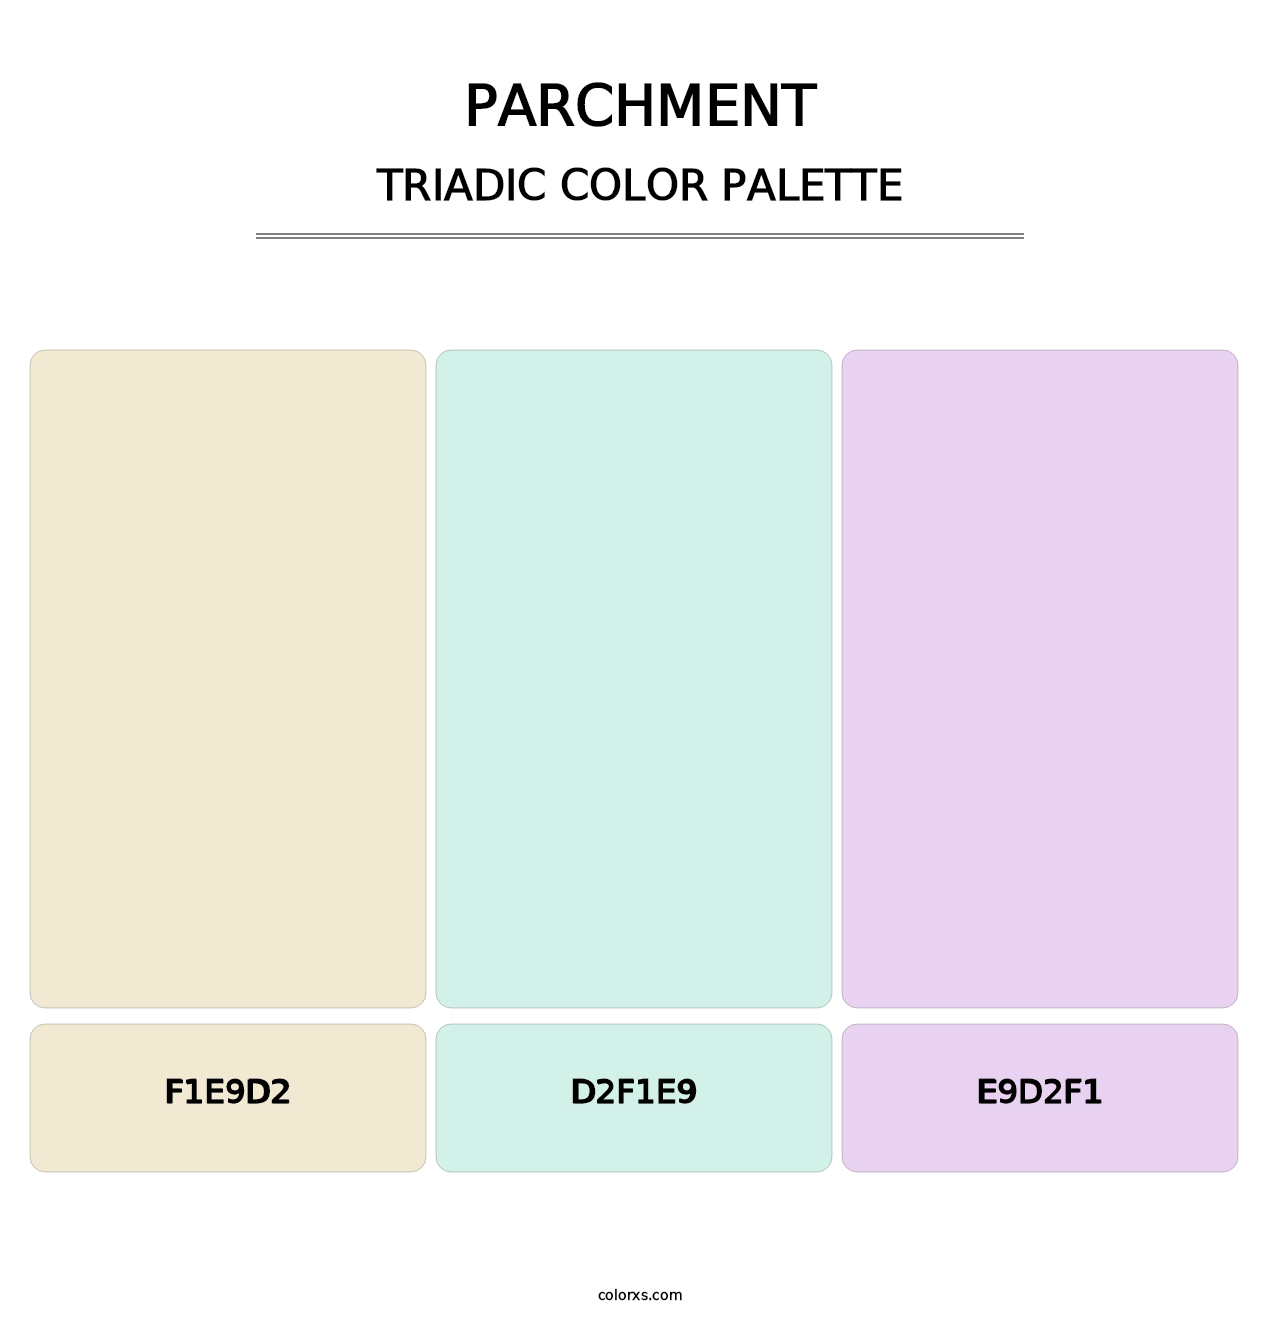 Parchment - Triadic Color Palette